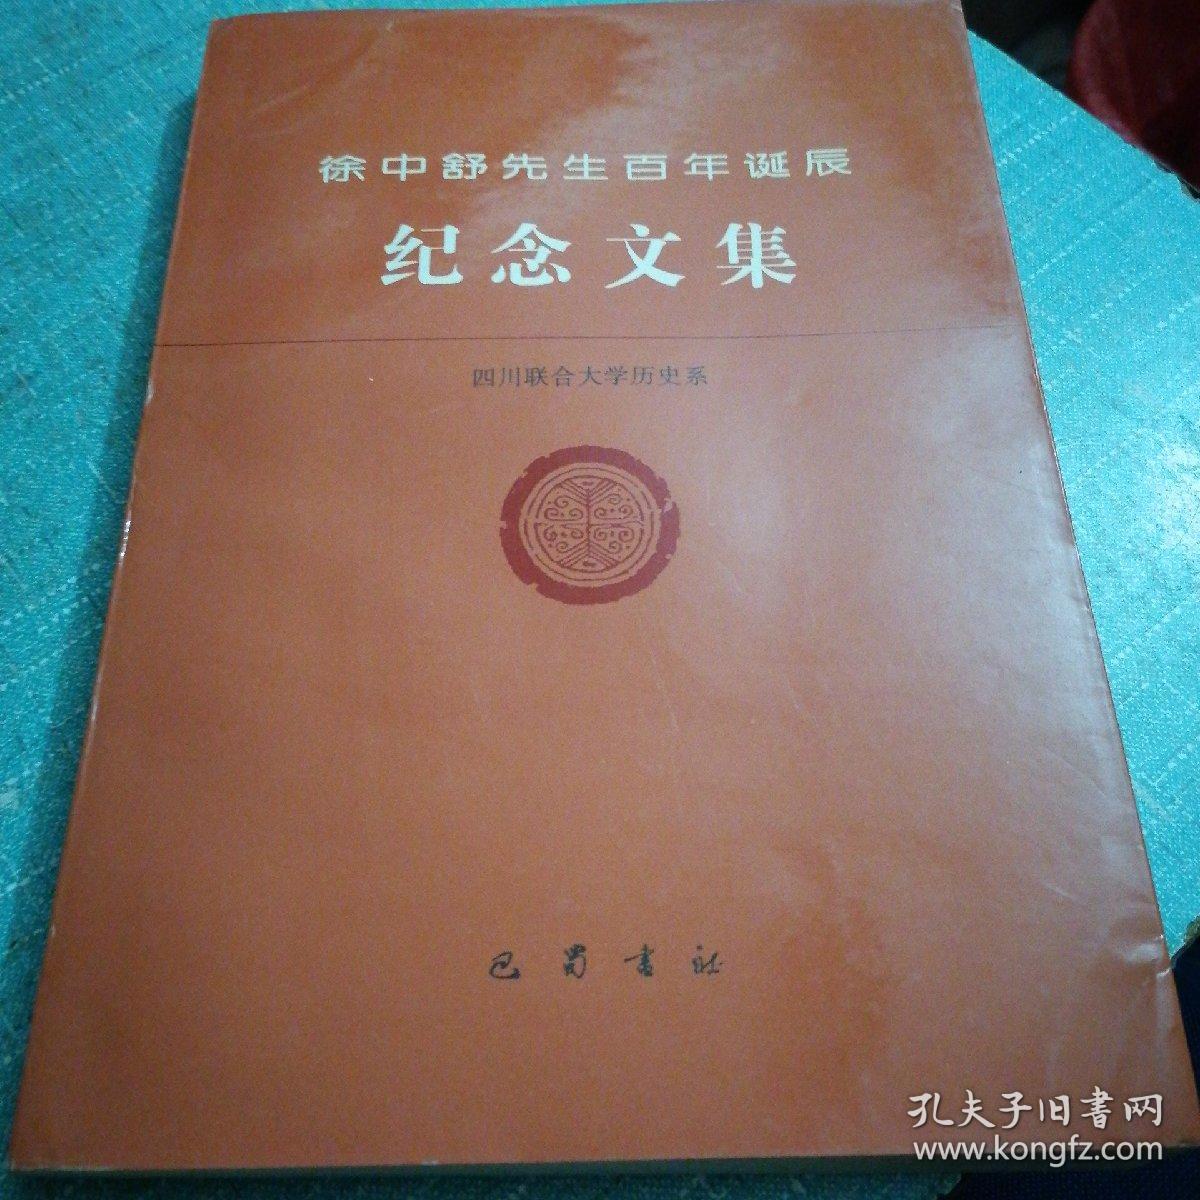 徐中舒先生百年诞辰 纪念文集（签名本，一版一印）